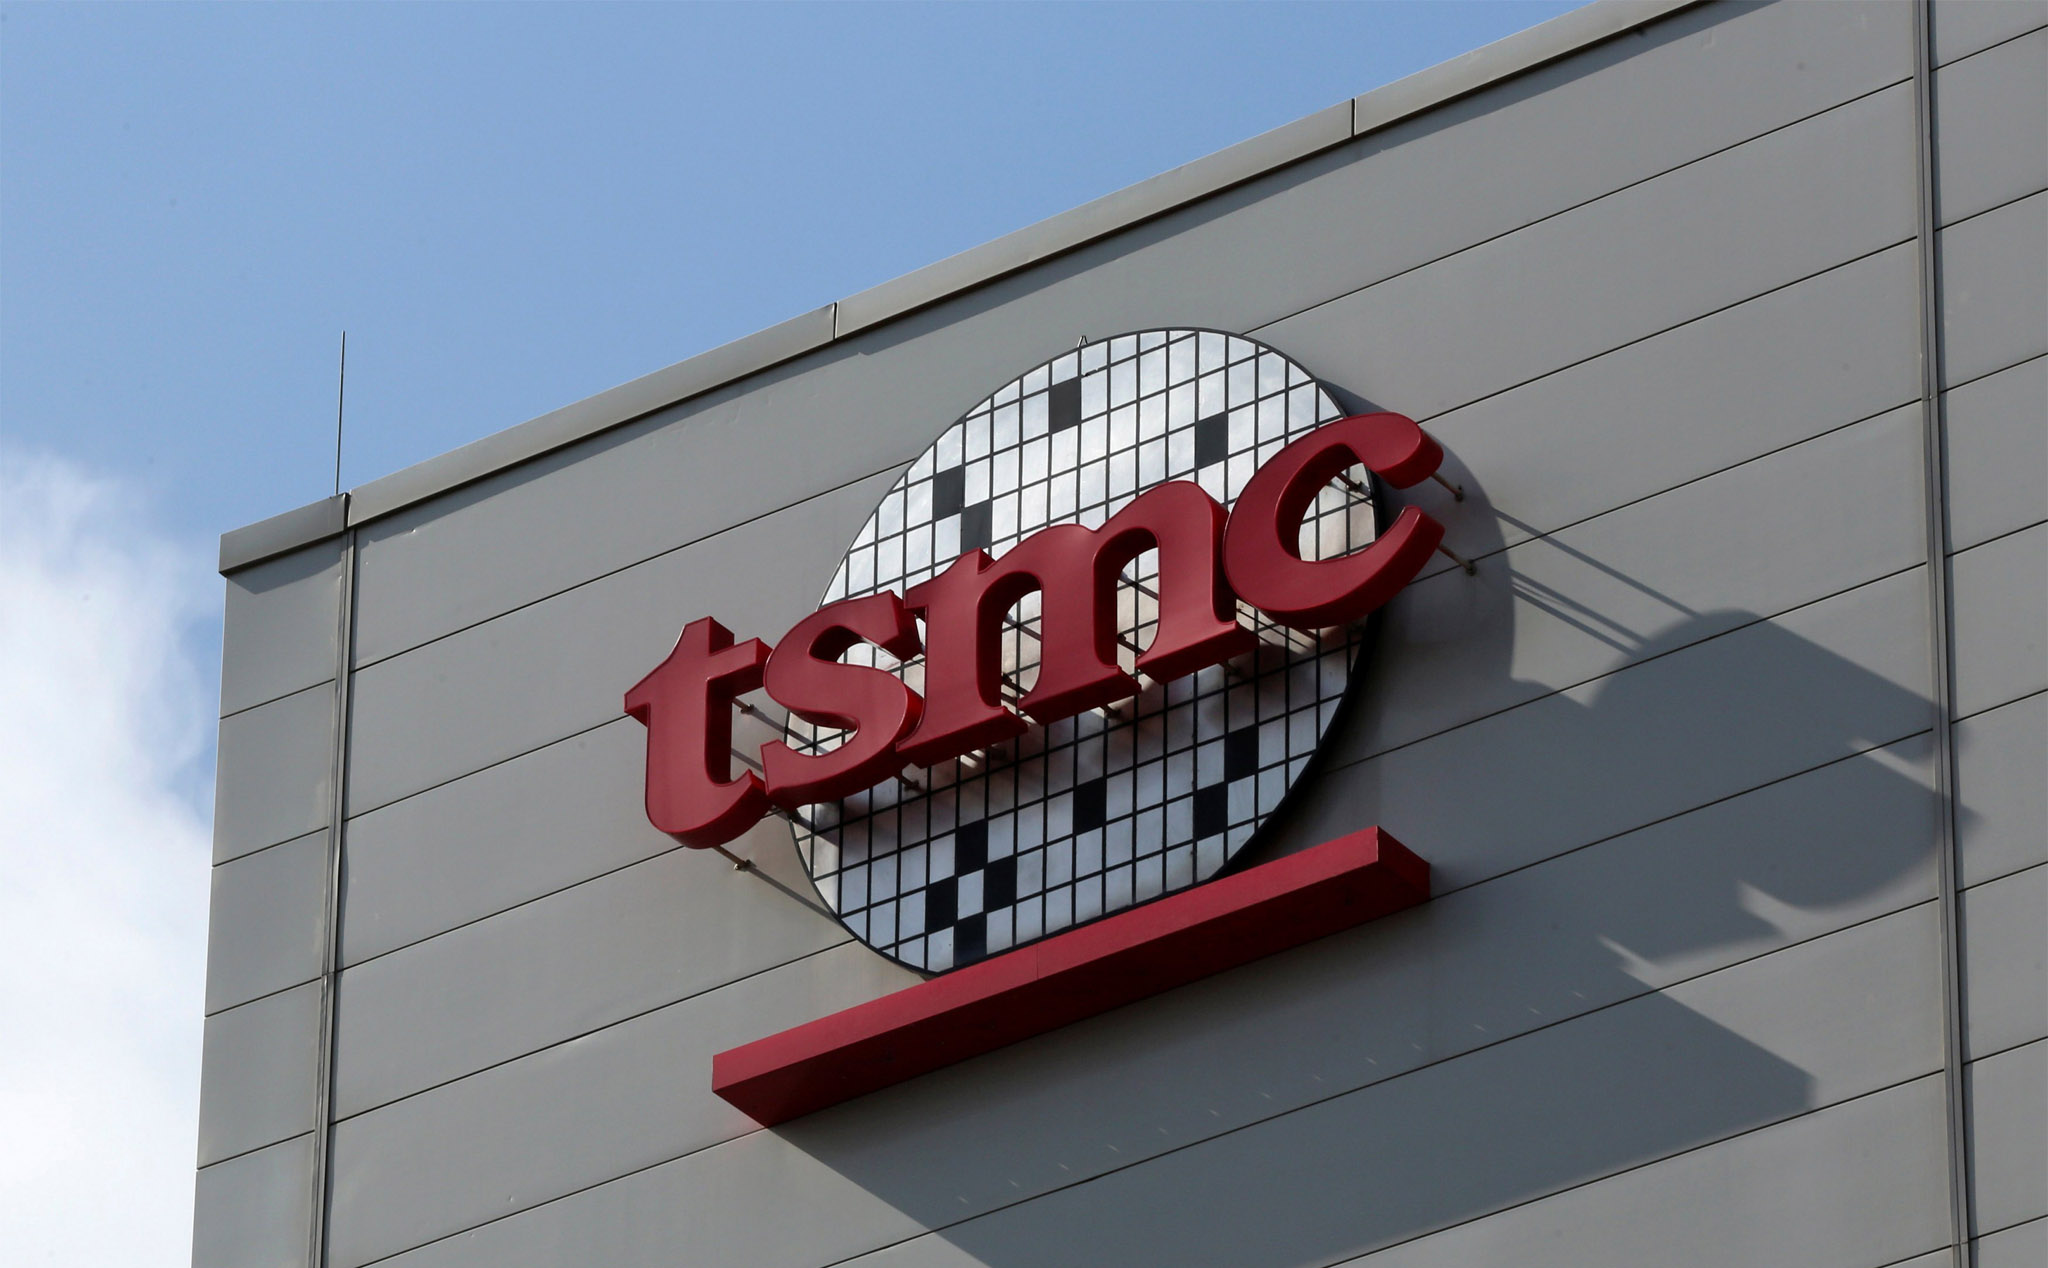 Mỹ đang tìm cách giới hạn lượng chip xử lý TSMC sản xuất và bán cho Huawei